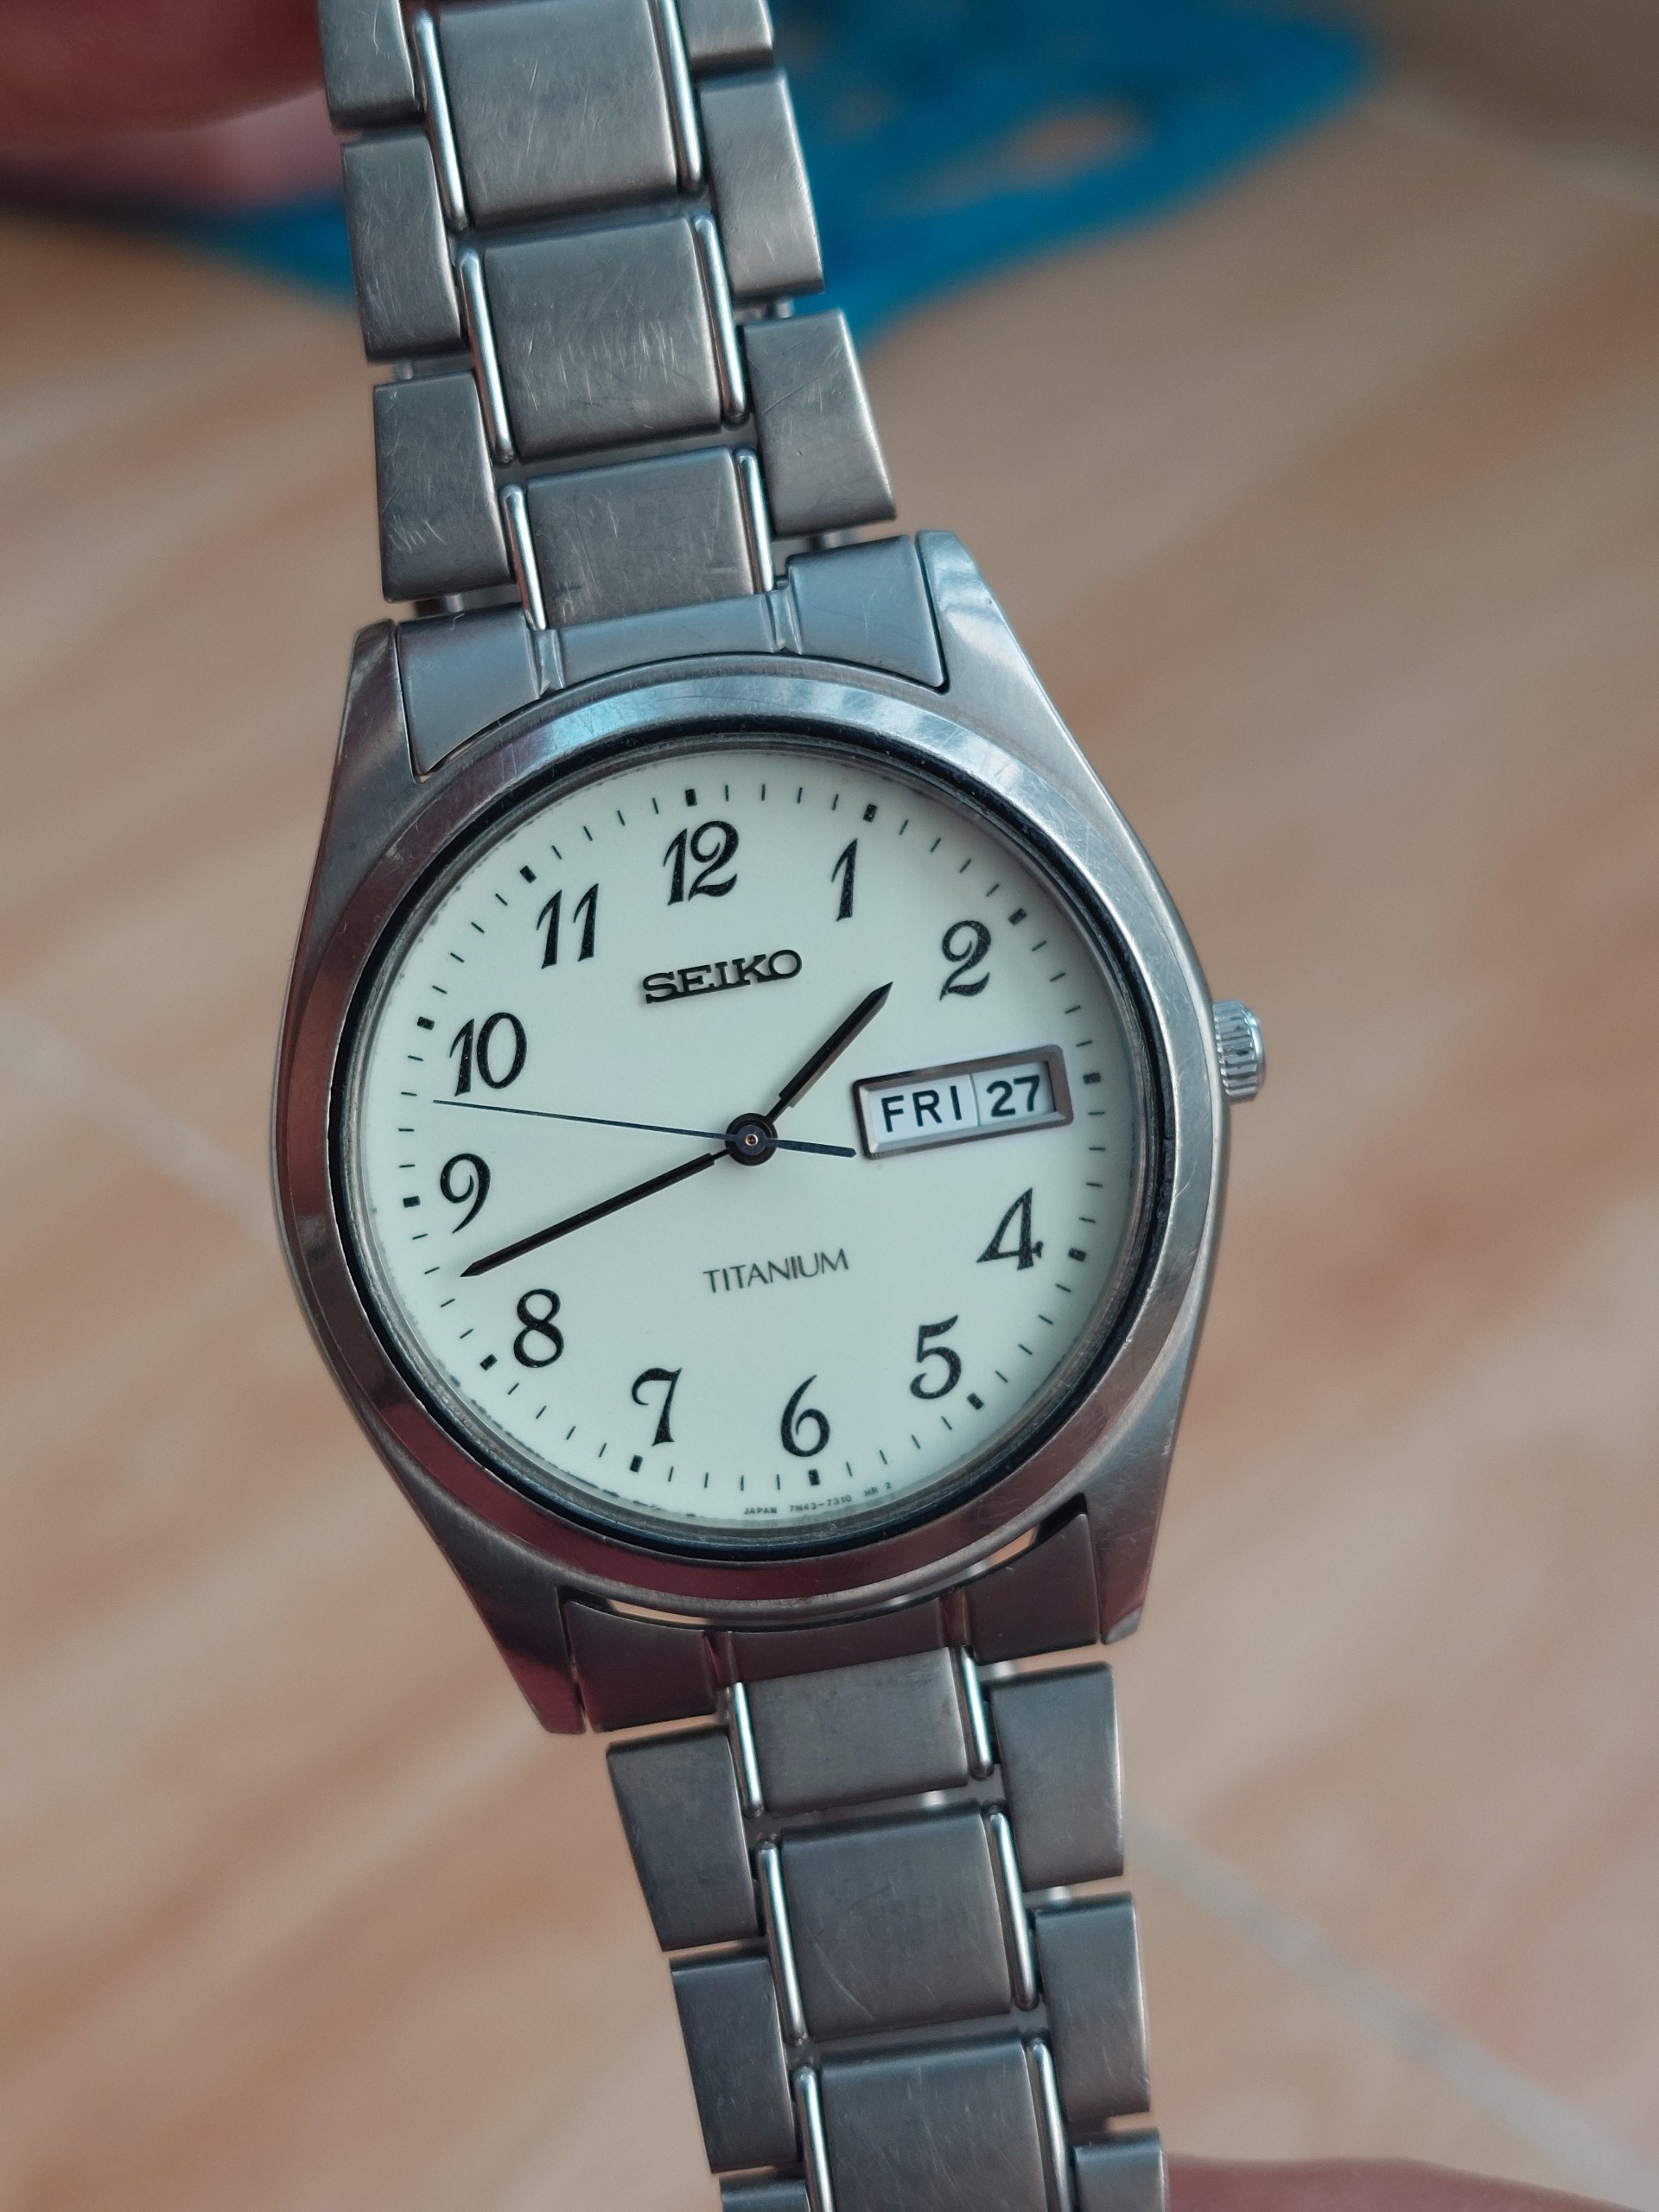 Đồng hồ nam Seiko titanium siêu nhẹ chạy pin qua sử dụng